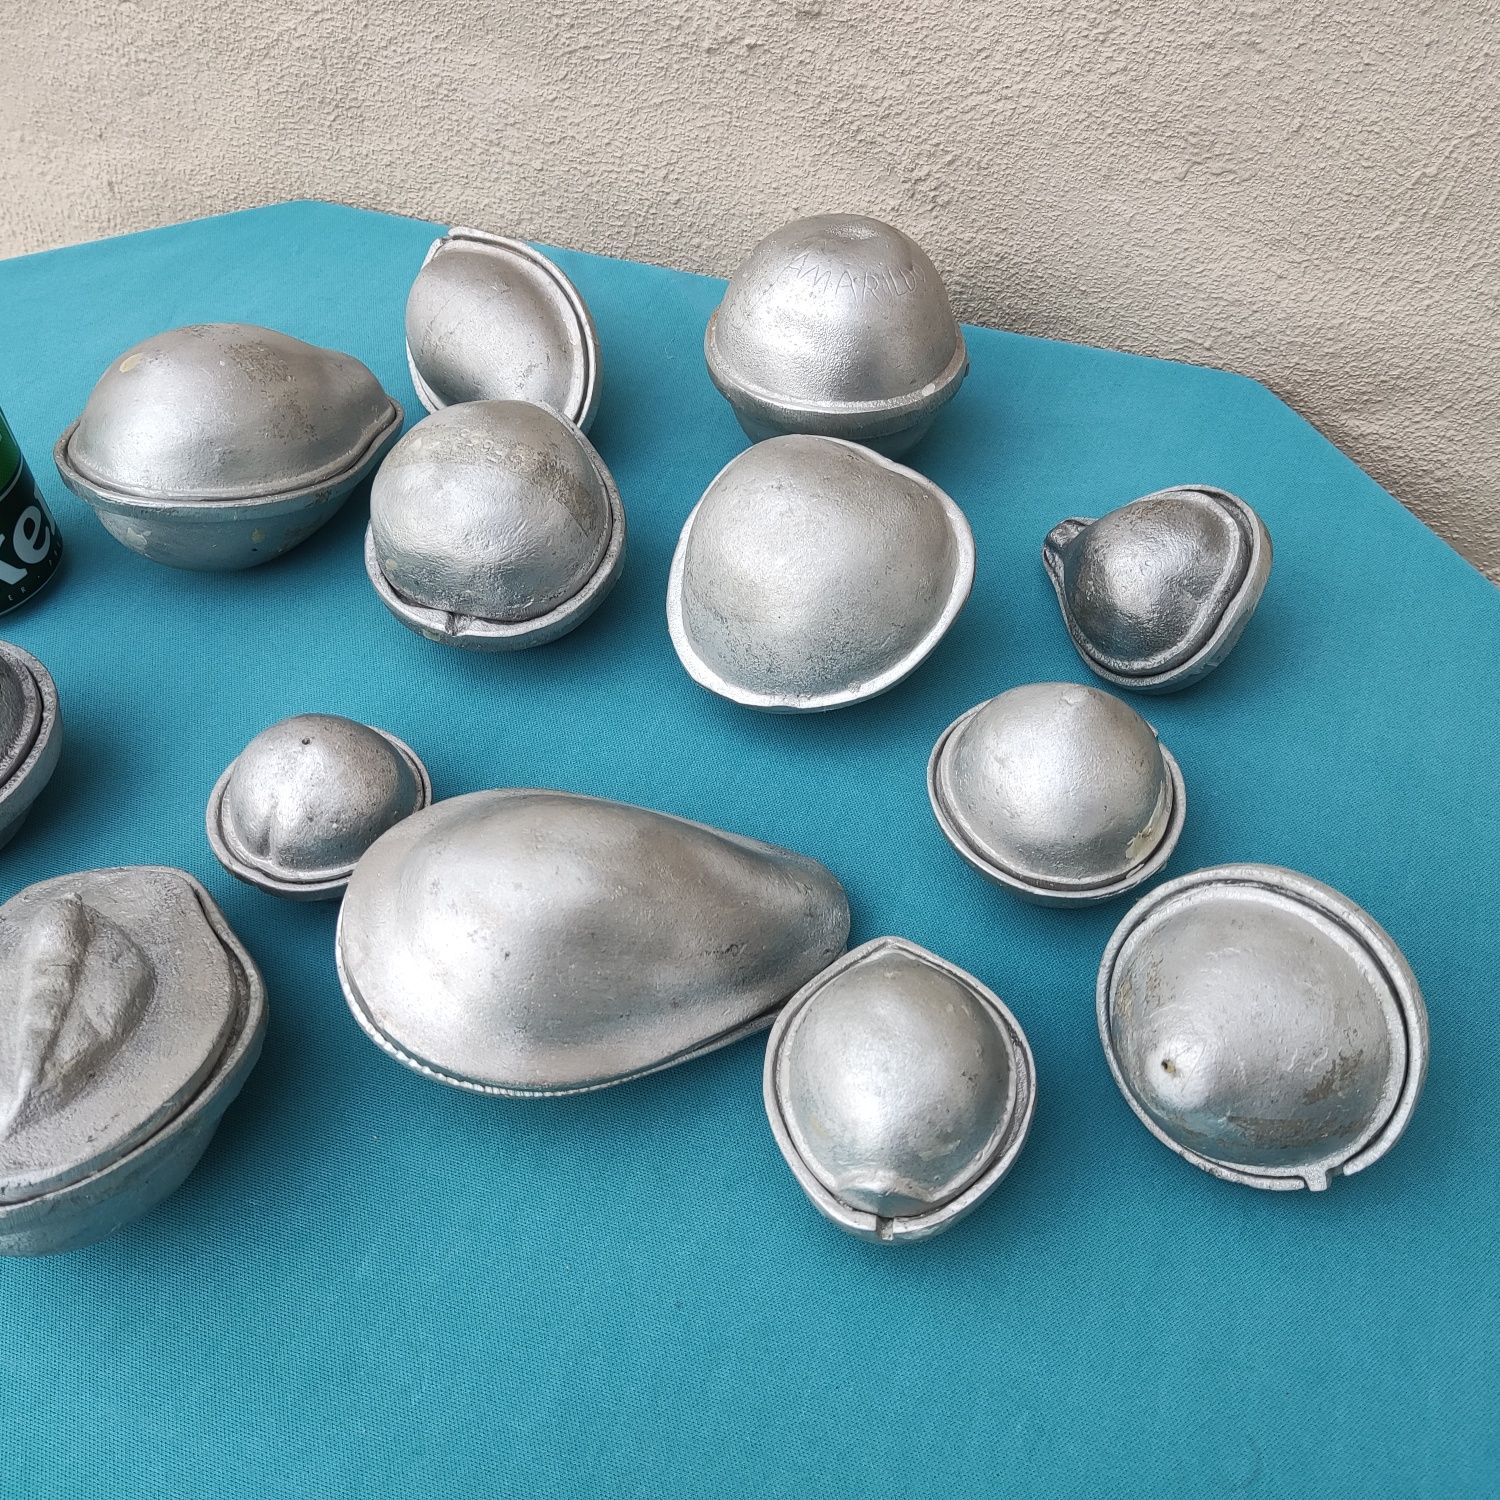 13 moldes em forma de fruta feitos em alumínio - antigo, vintage